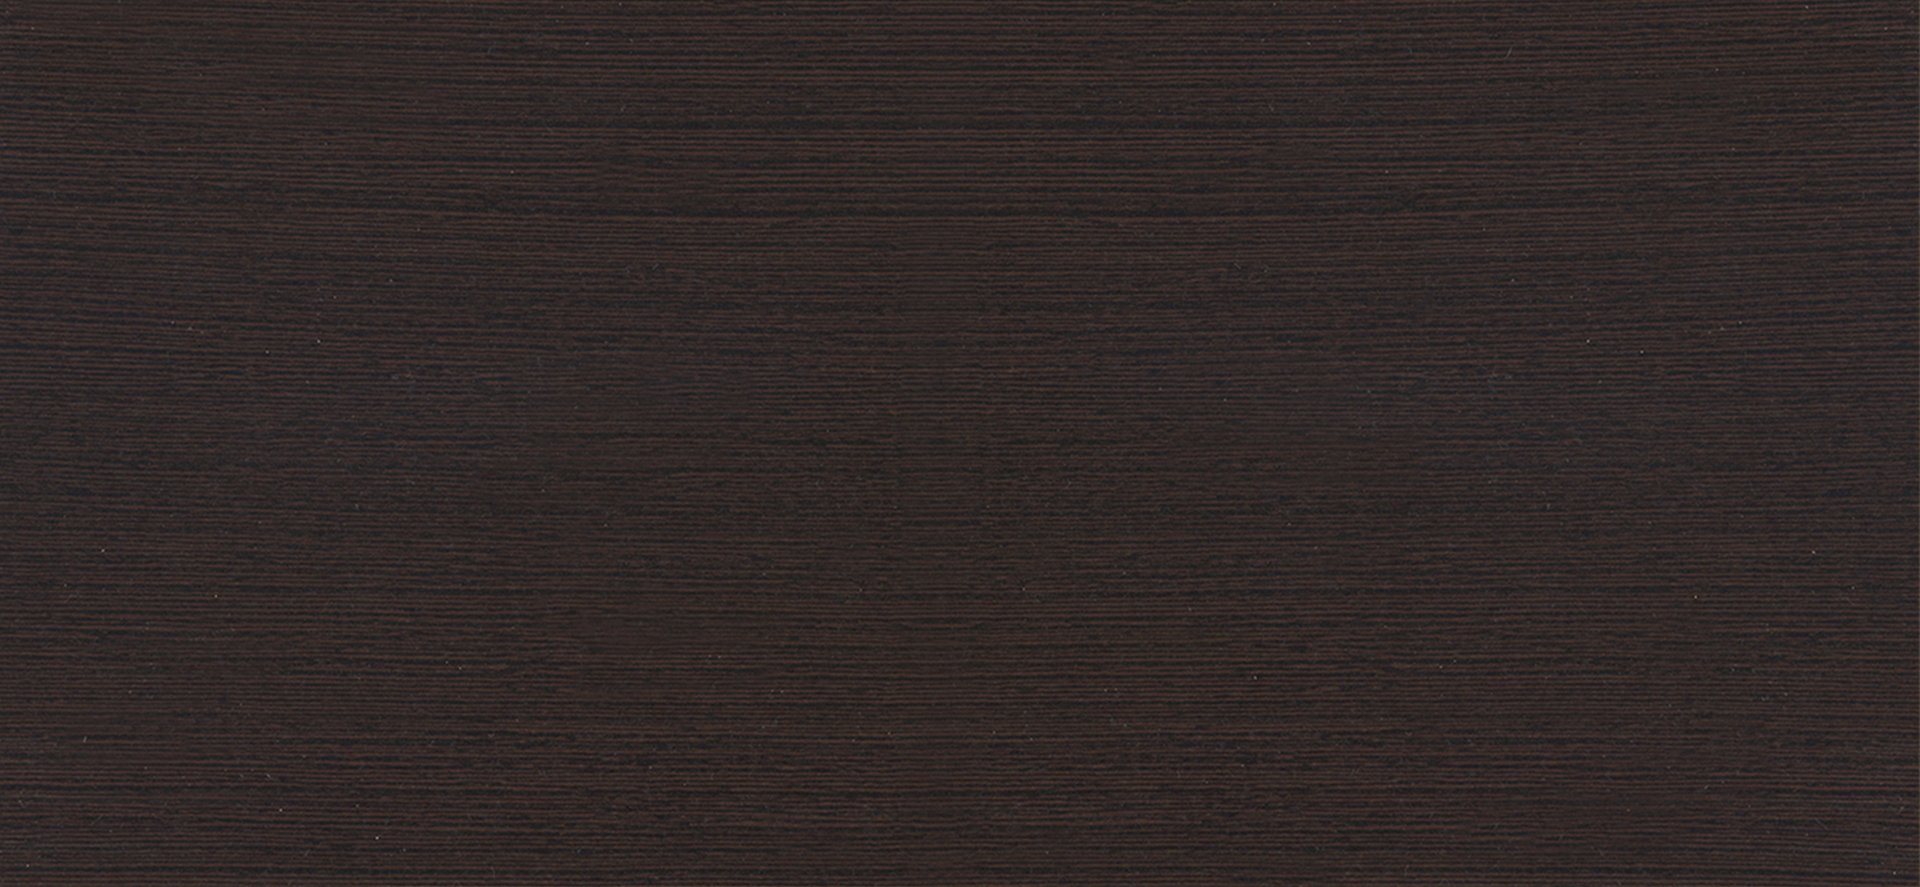 Дуб термо черно-коричневый н1199 st12